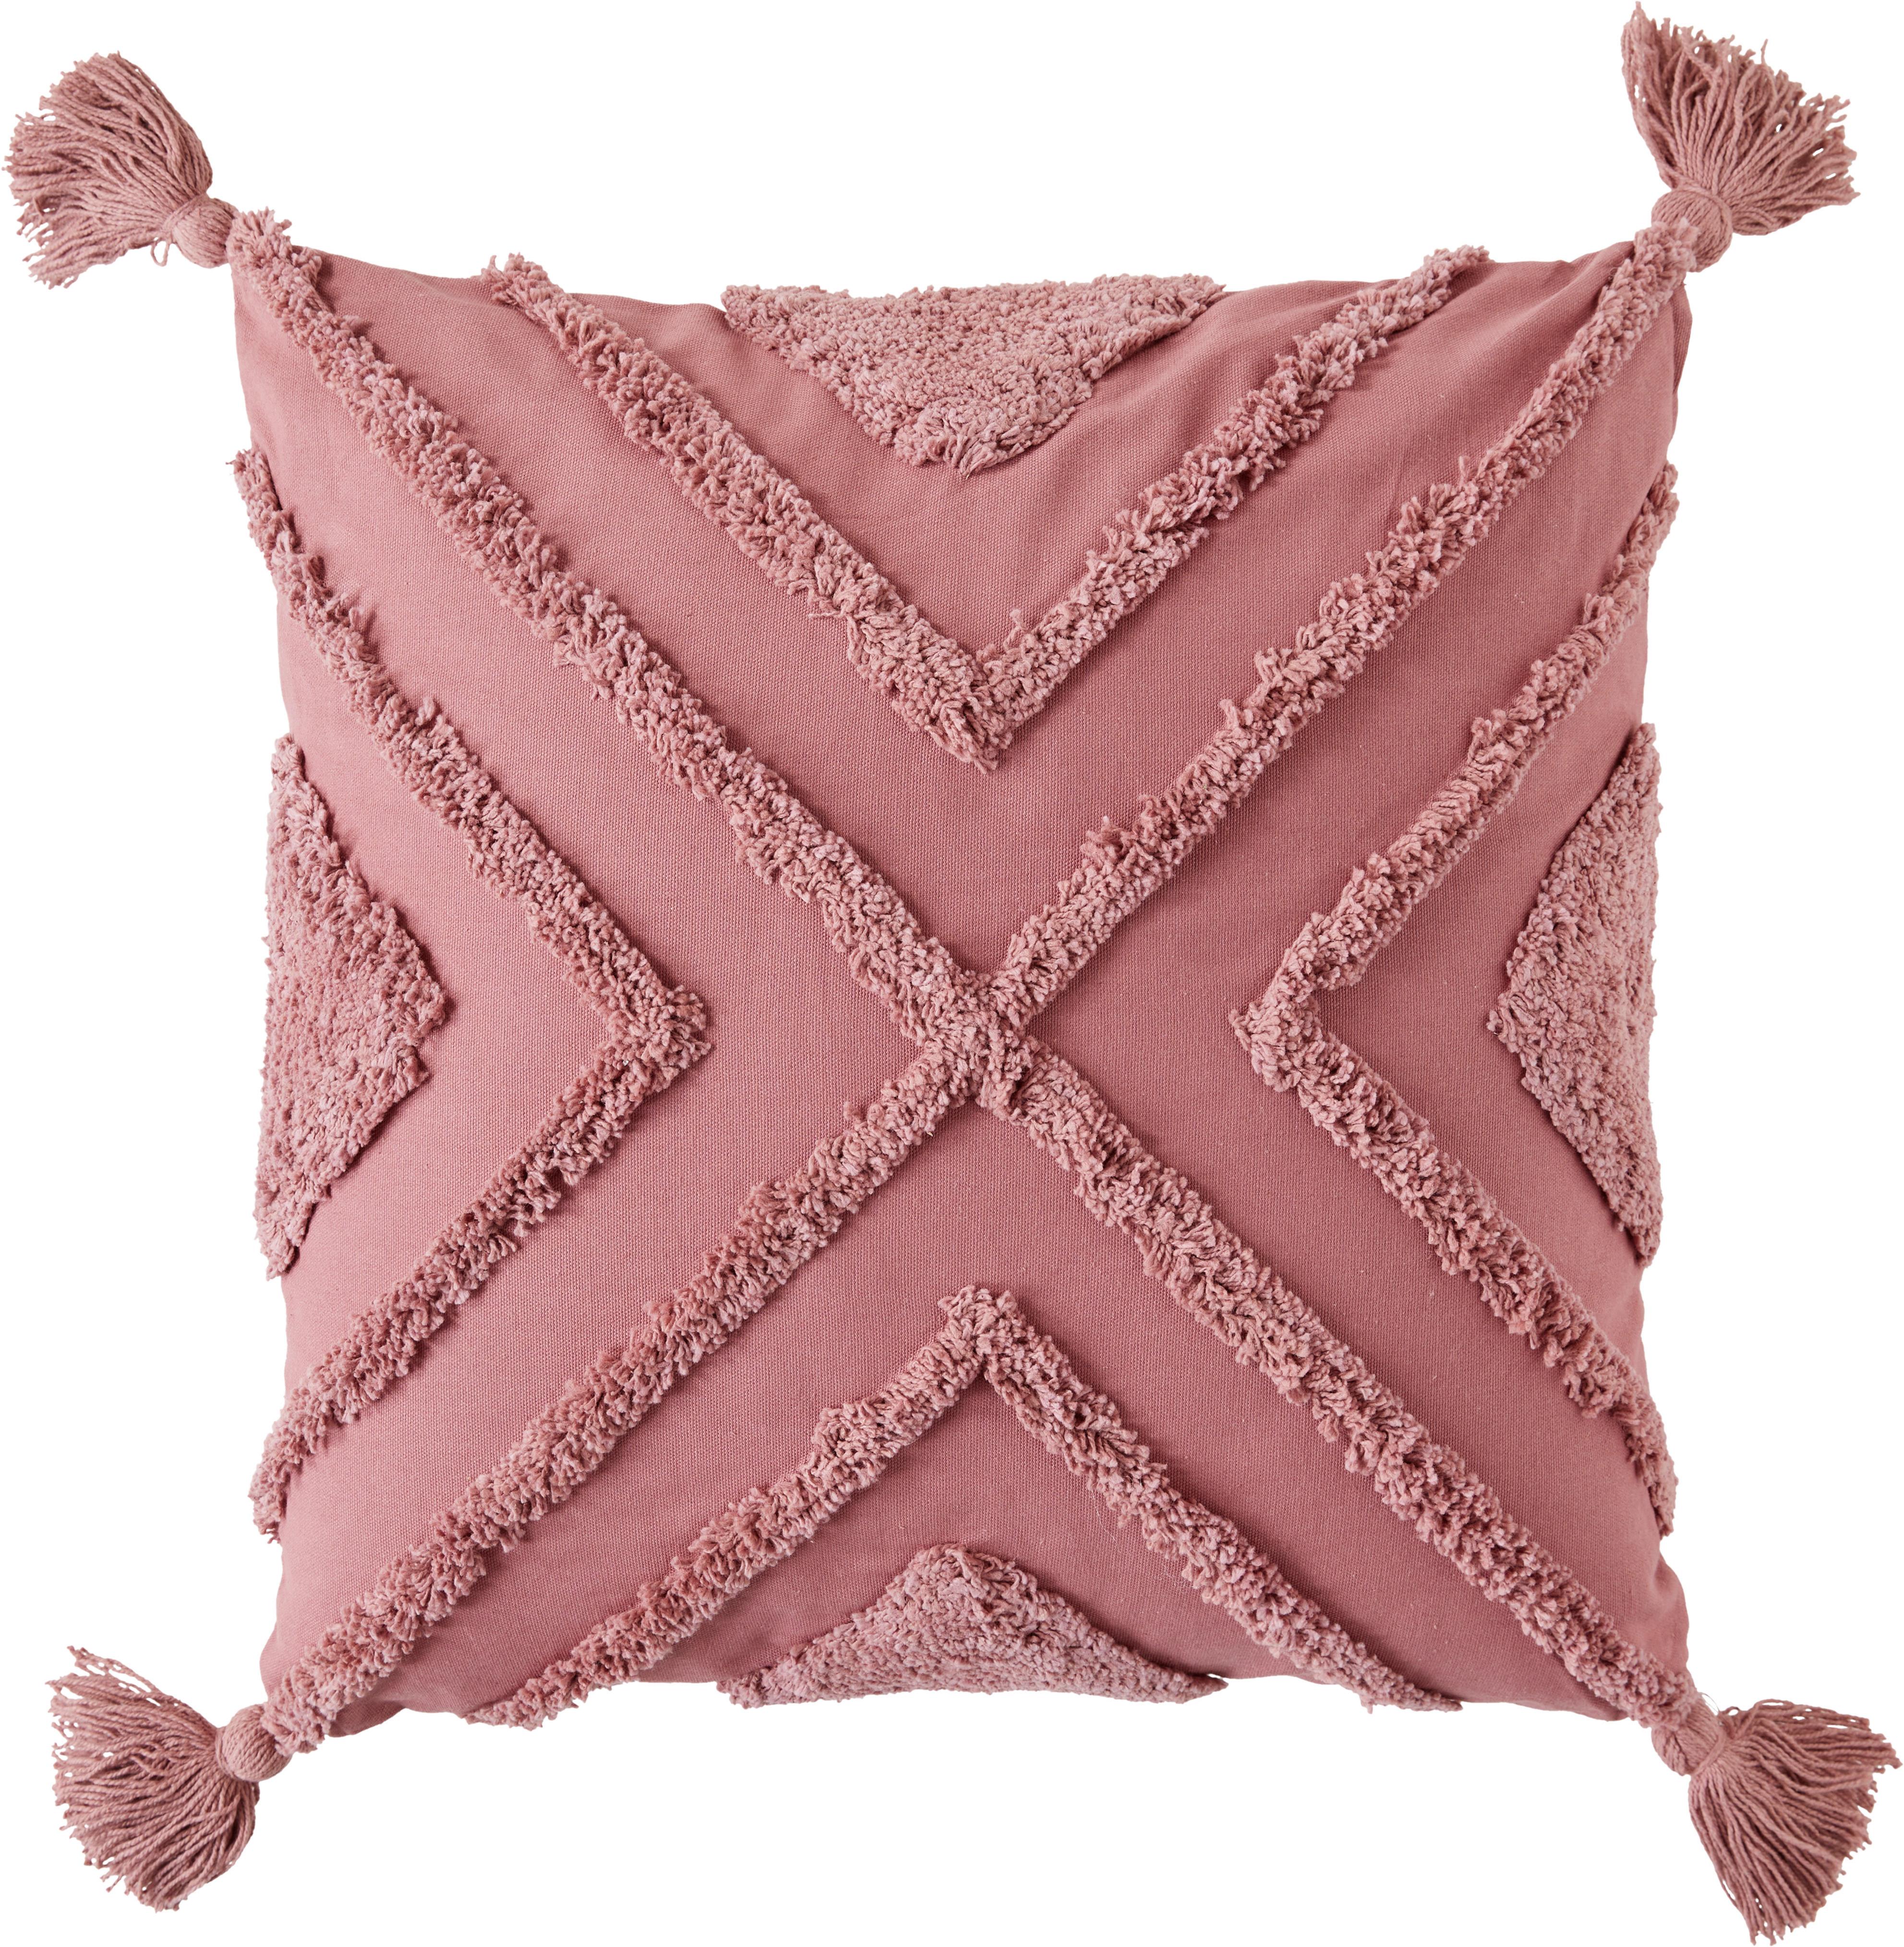 Dekorační Polštář Nouria, 50/50cm, Růžová - starorůžová, Lifestyle, textil (50/50cm) - Premium Living